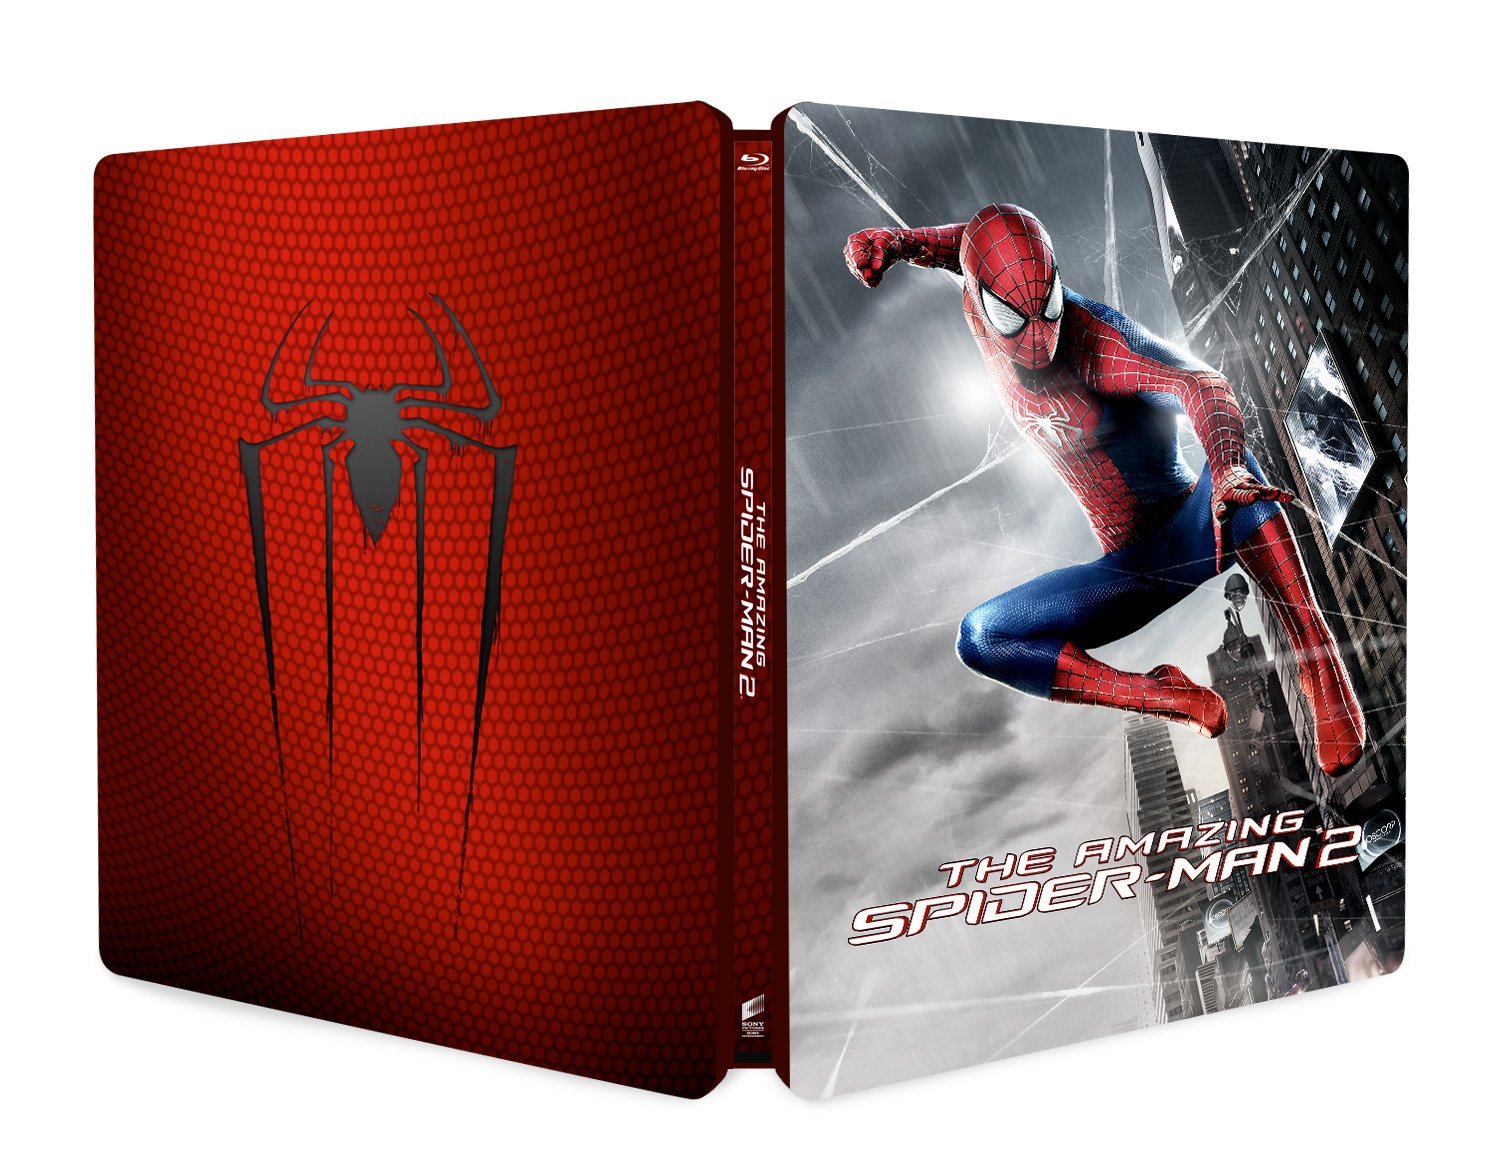 Amazing spider-man 2 steelbook it